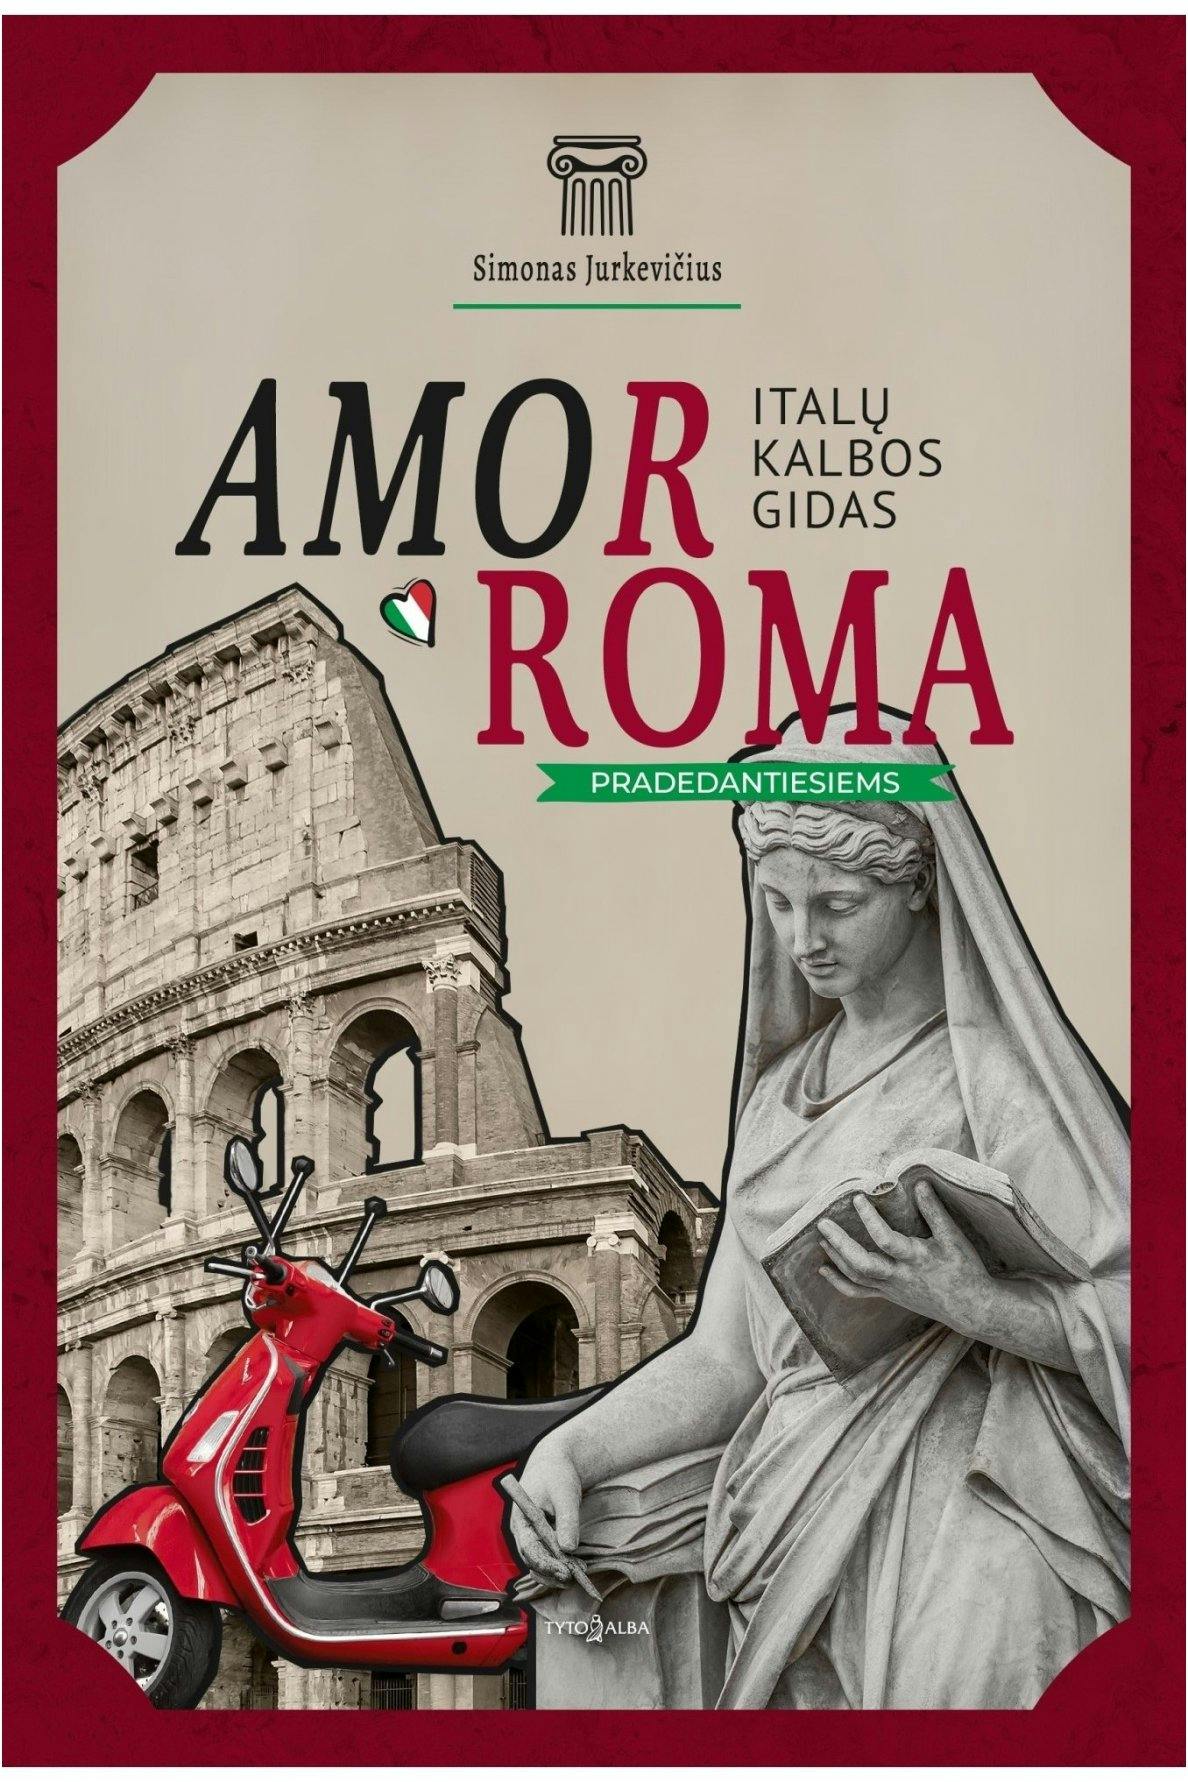 AmorRoma: italų kalbos gidas. Pradedantiesiems